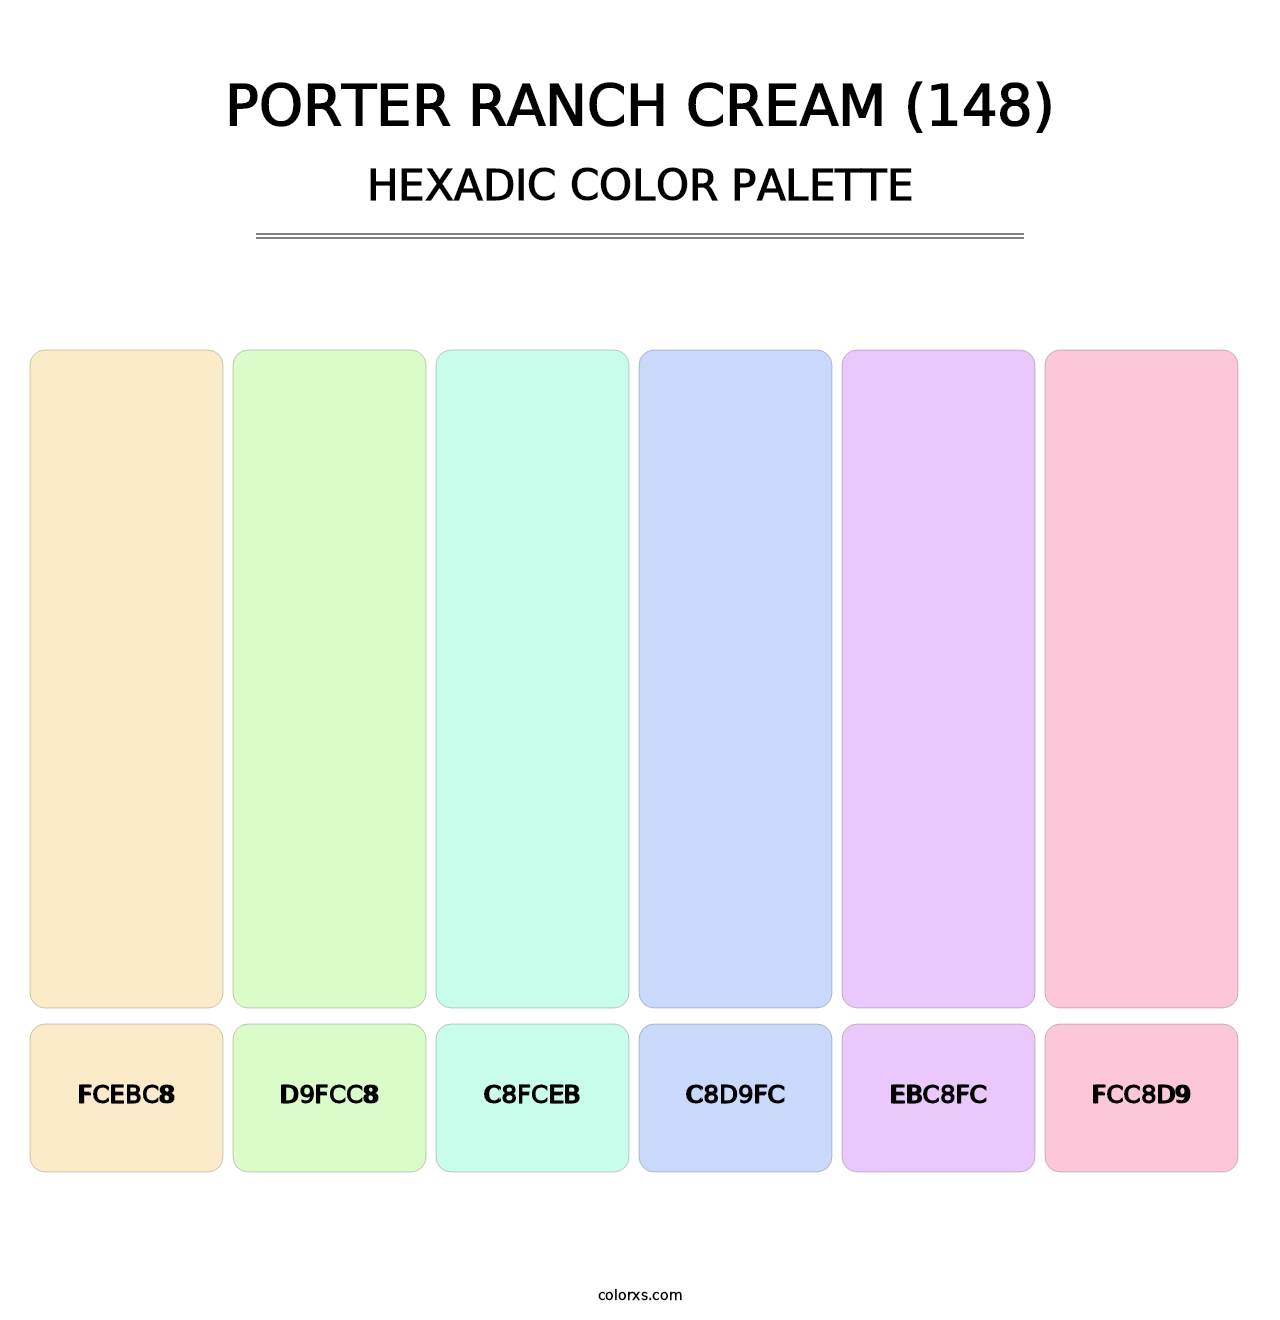 Porter Ranch Cream (148) - Hexadic Color Palette